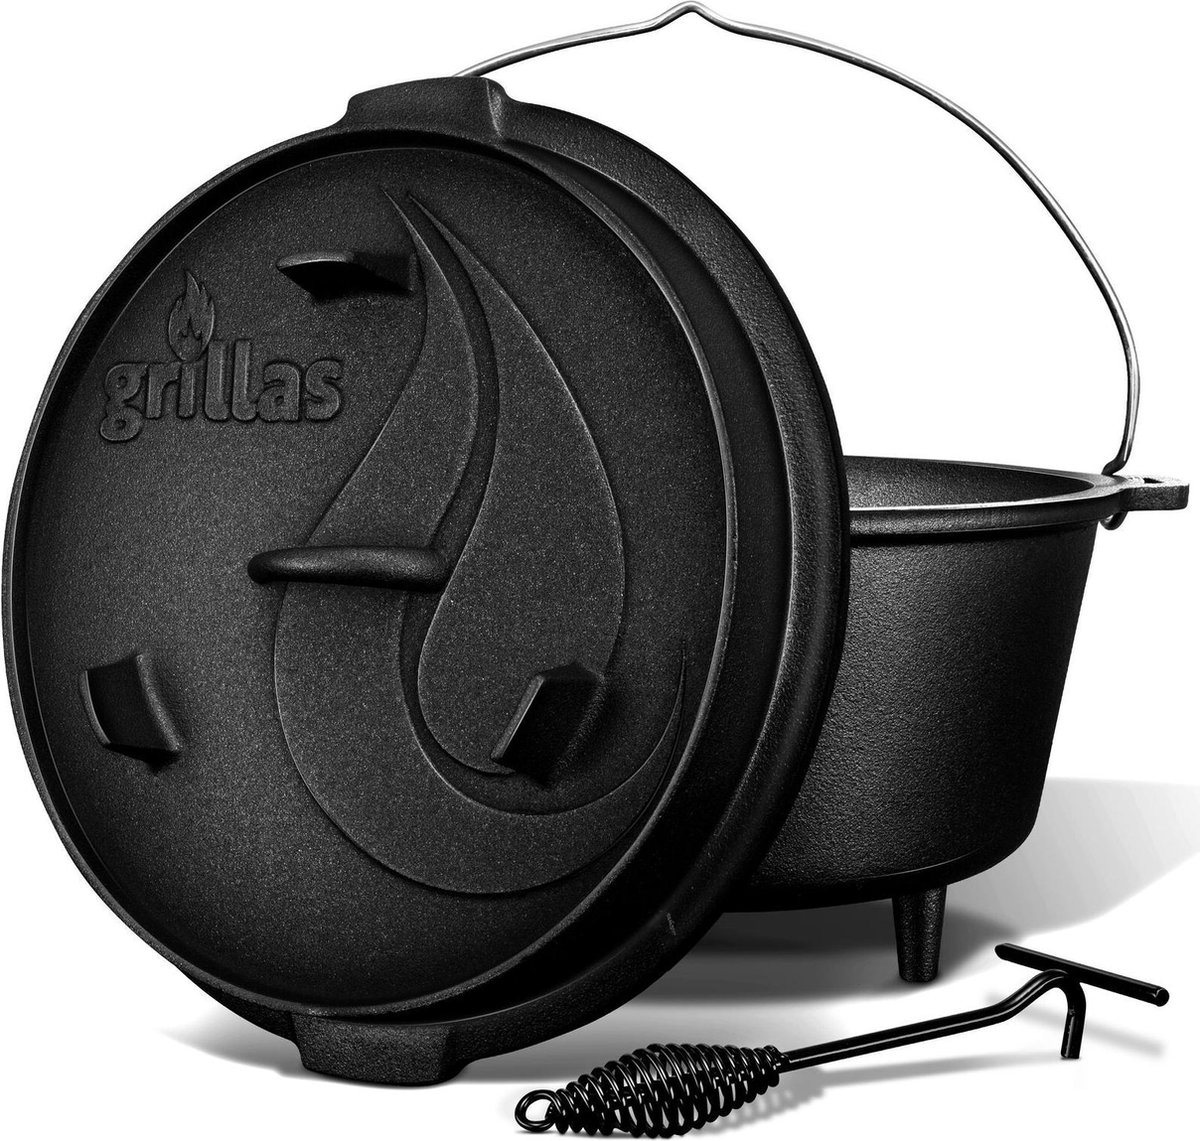 Grillas- Dutch Oven, 13.6L, BBQ pan, gietijzer, met pootjes